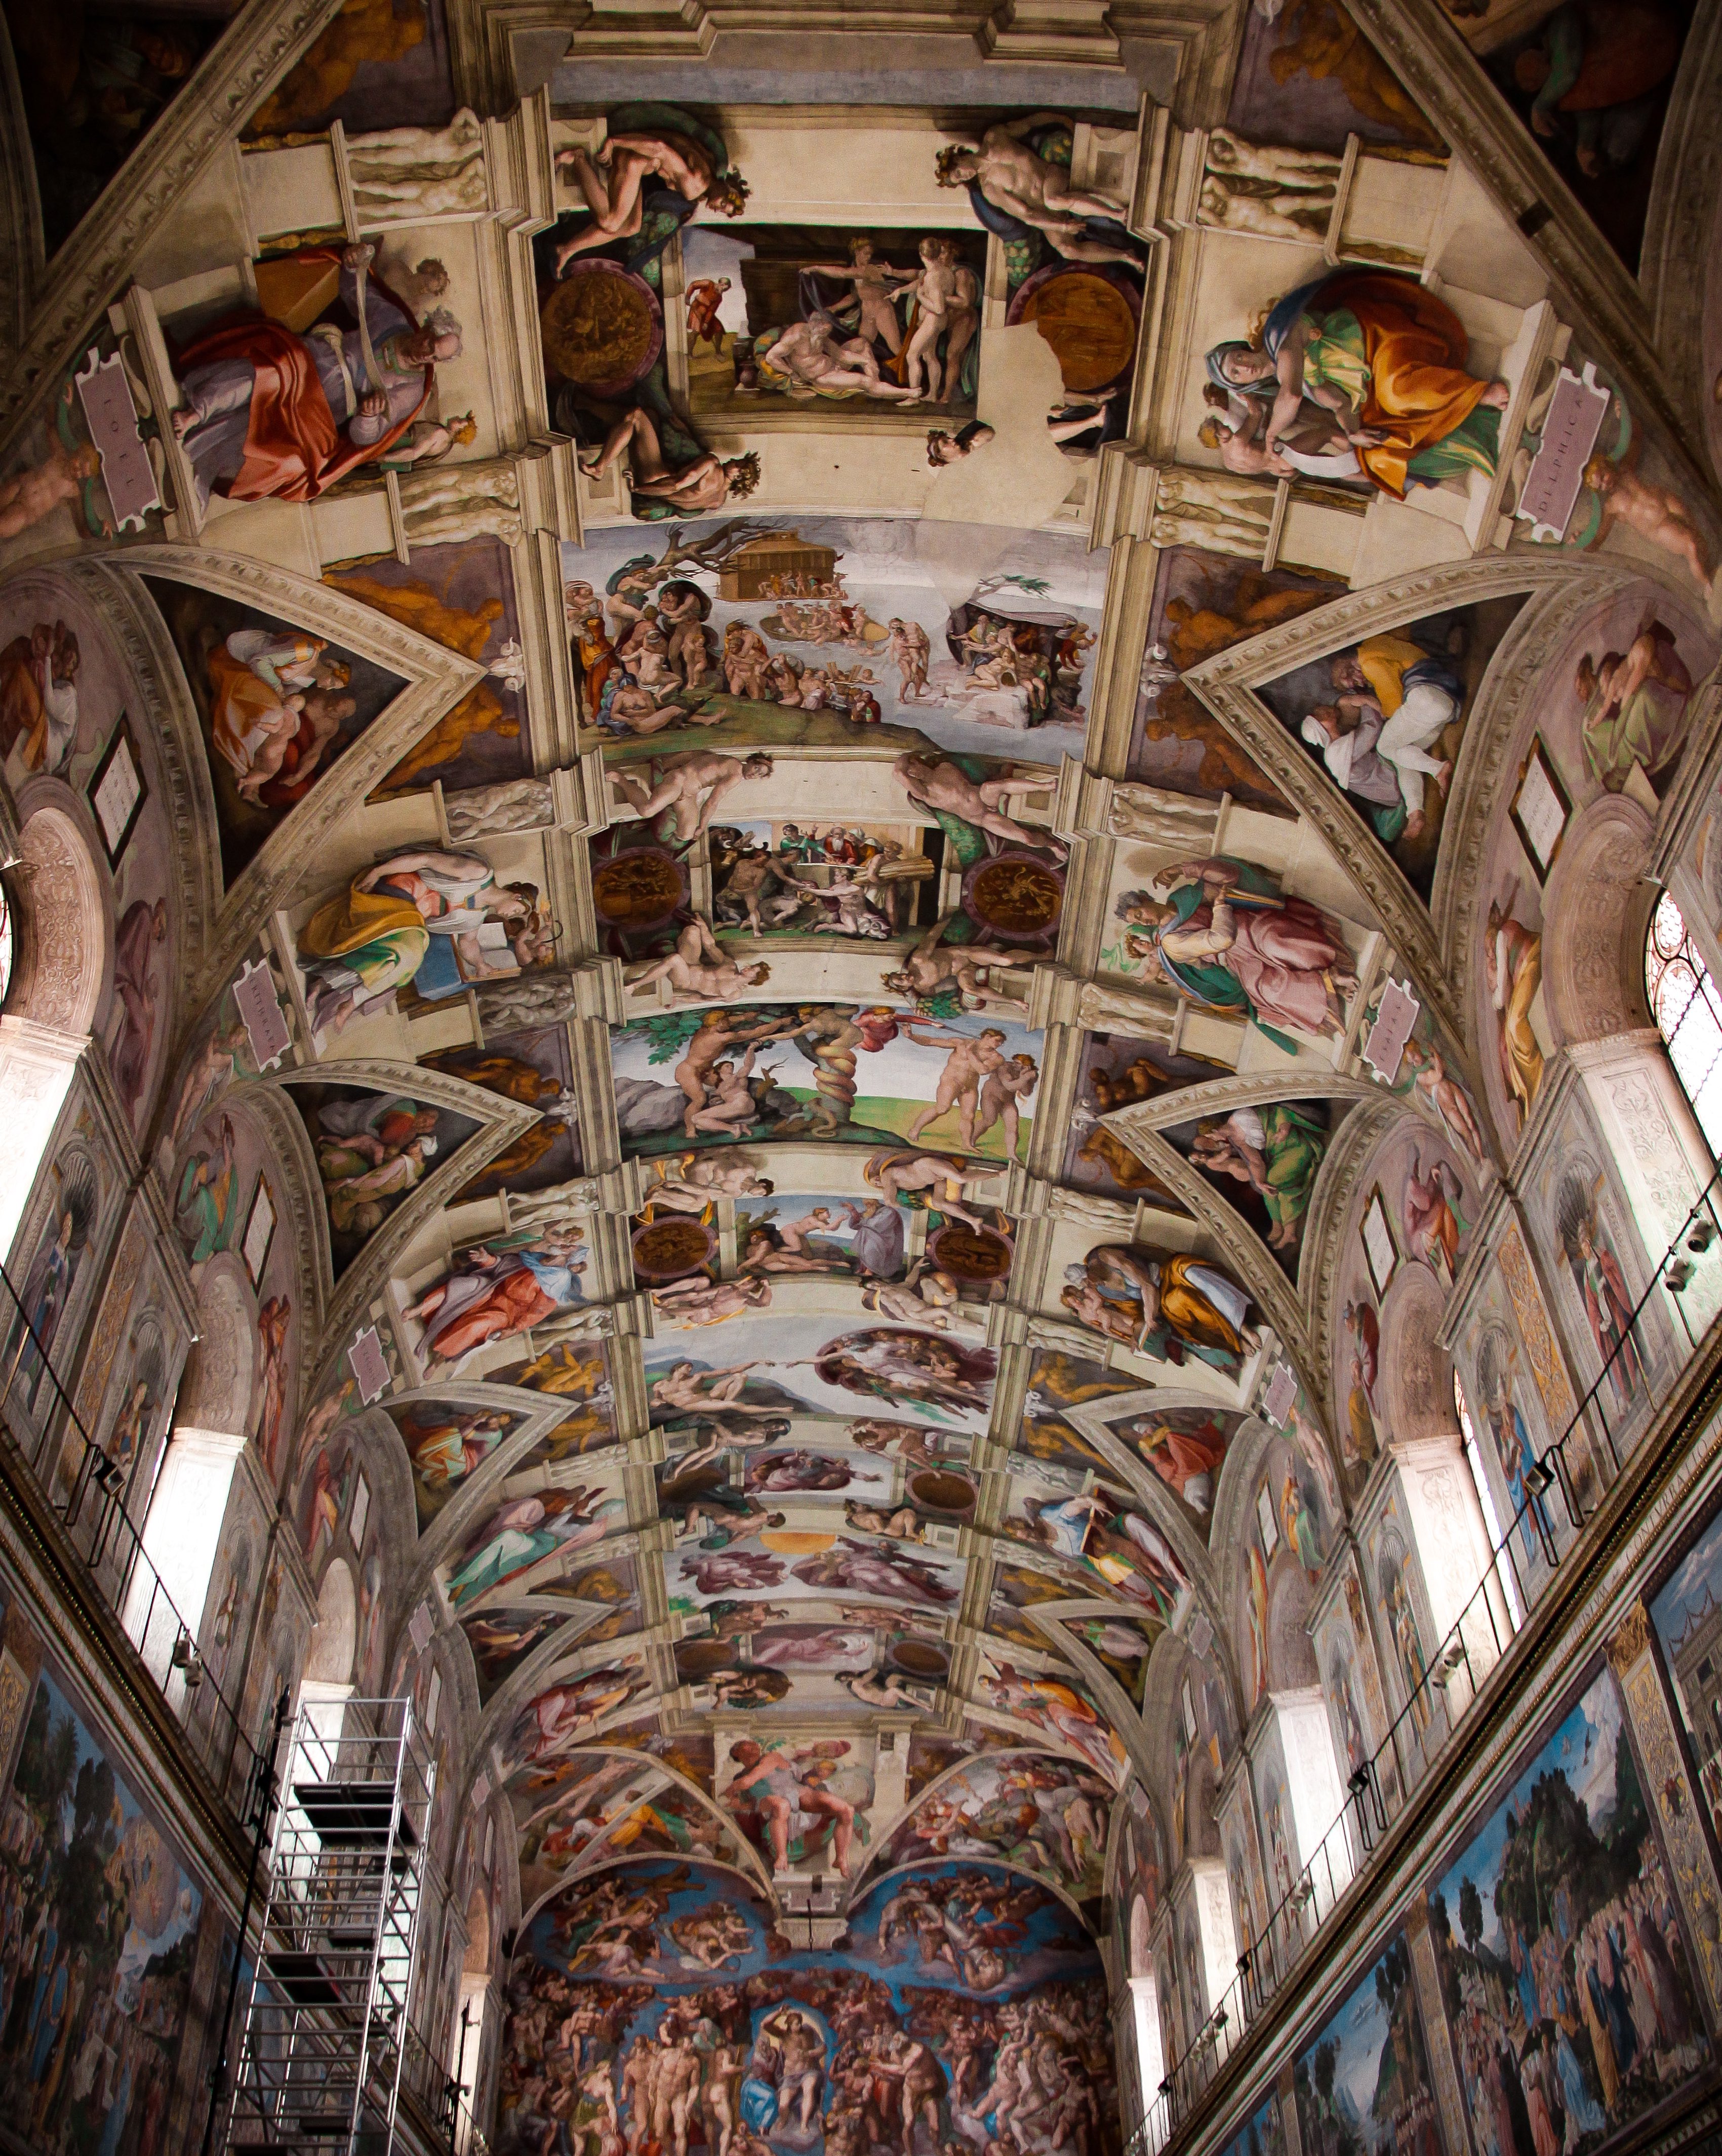 Sự thông thái của người xưa: Trần nhà nguyện của danh họa Michelangelo